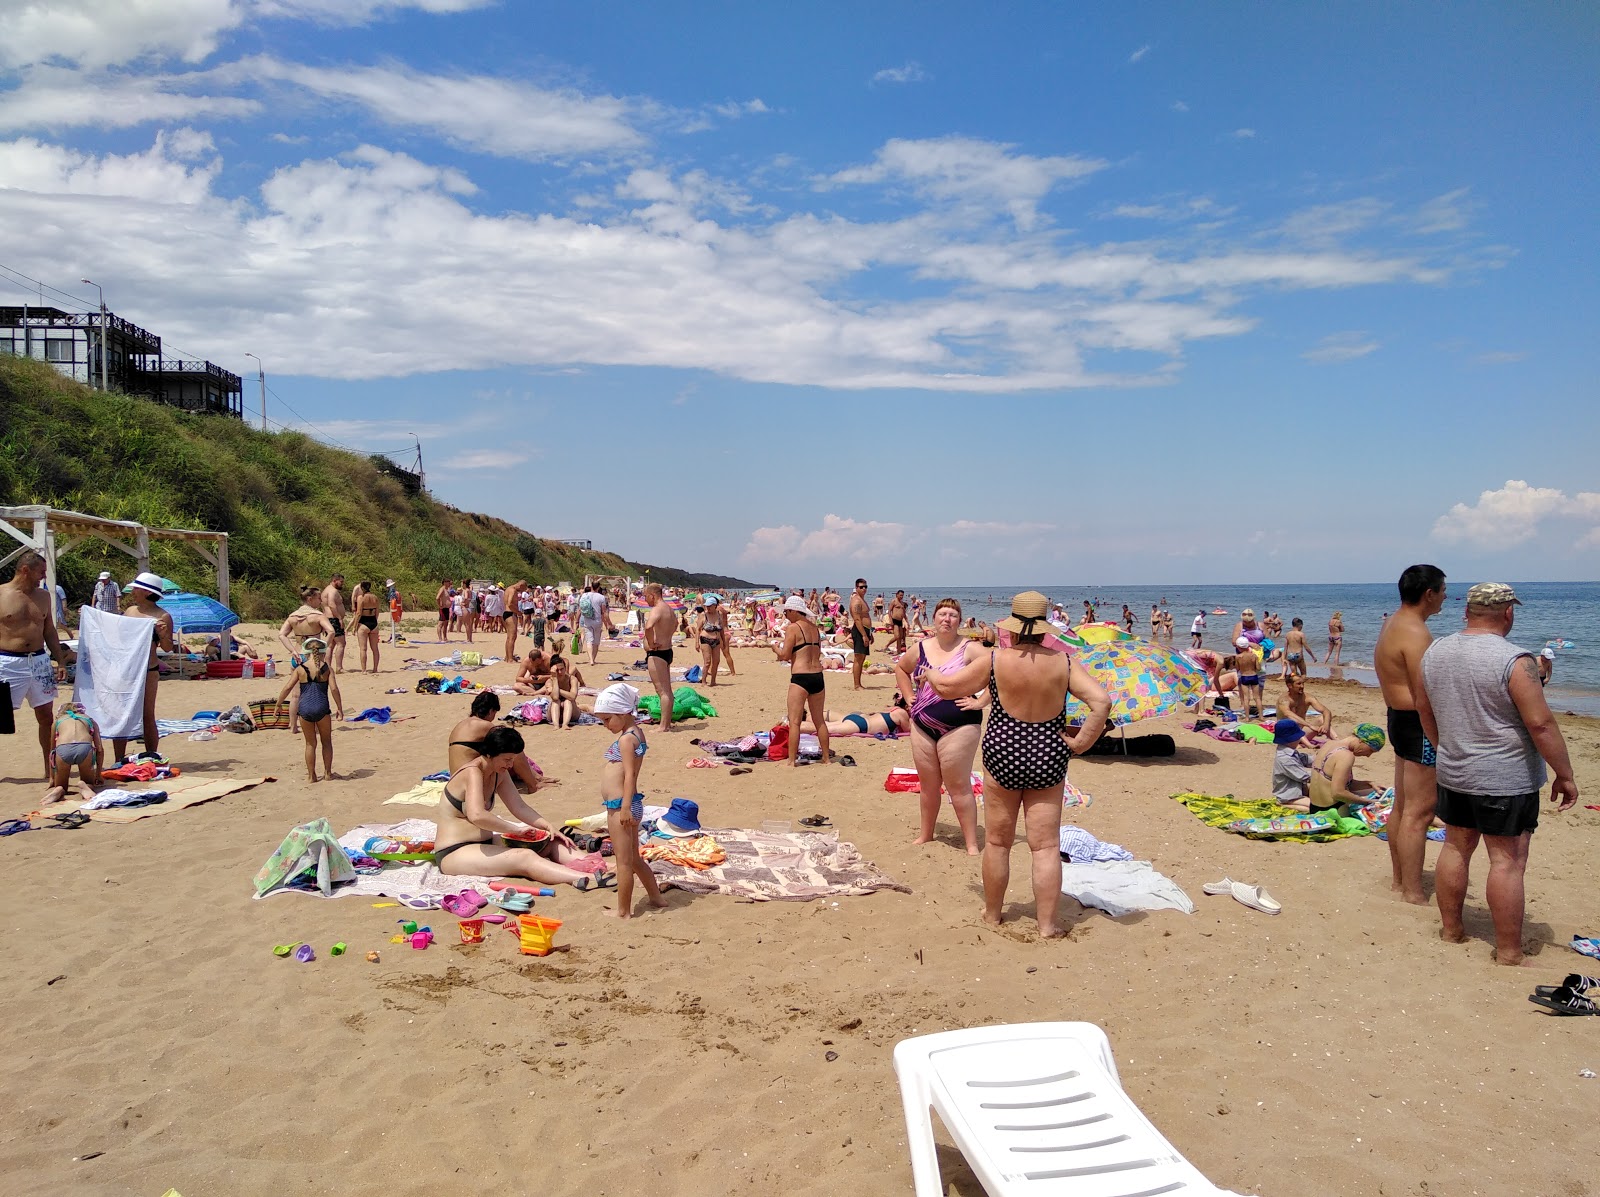 Photo de Kuchugury beach - endroit populaire parmi les connaisseurs de la détente